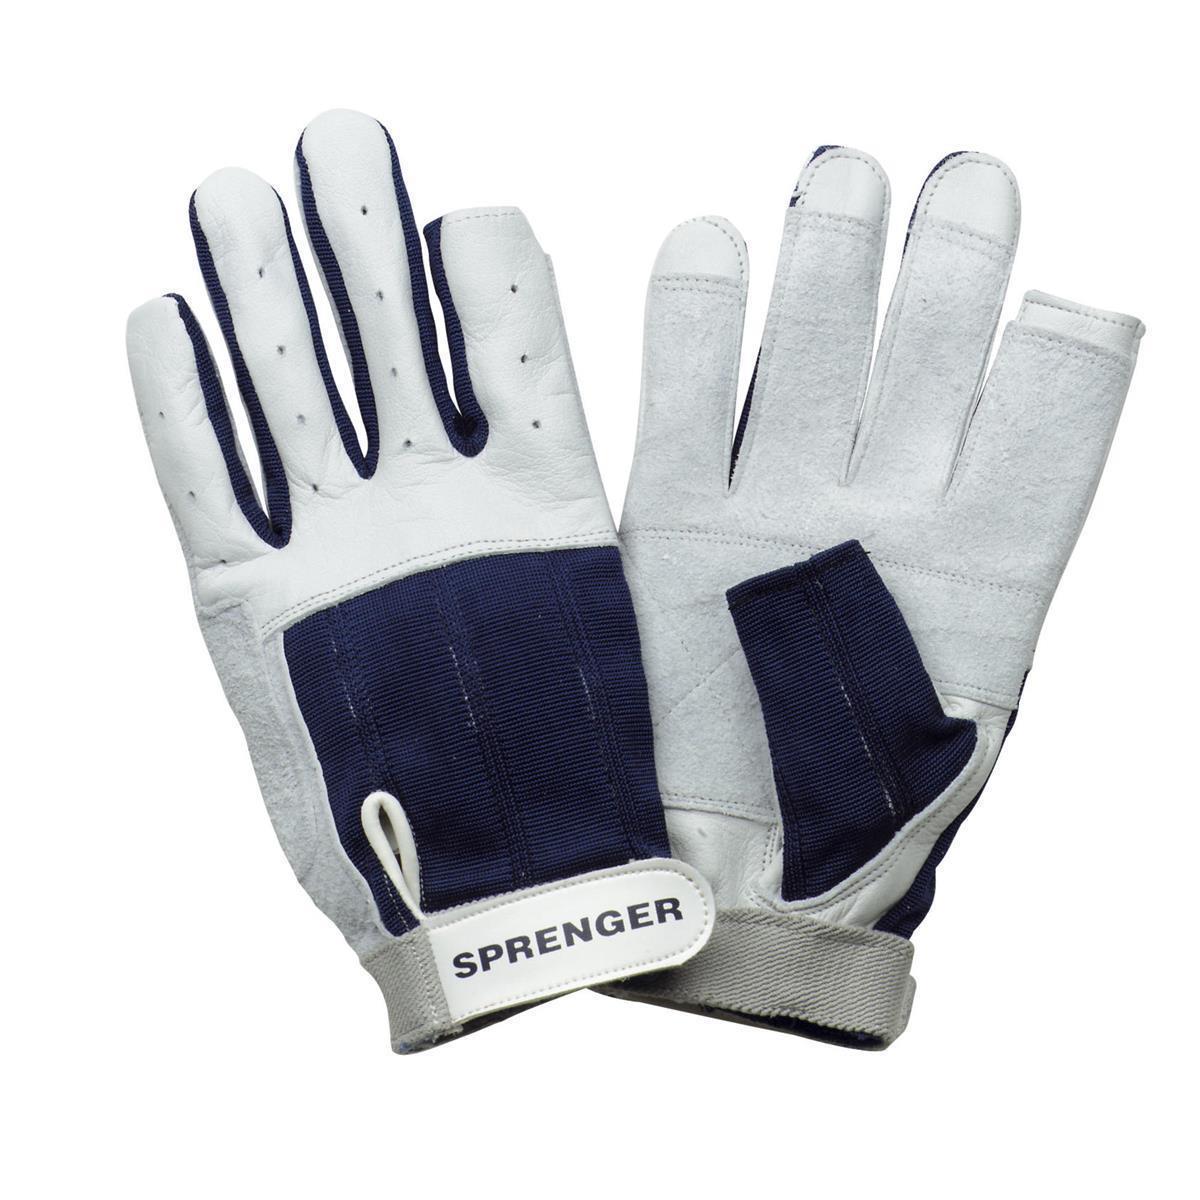 SPRENGER, Segel-Handschuhe XS - Kalbsleder, Daumen und Zeigefinger ohne Kuppen